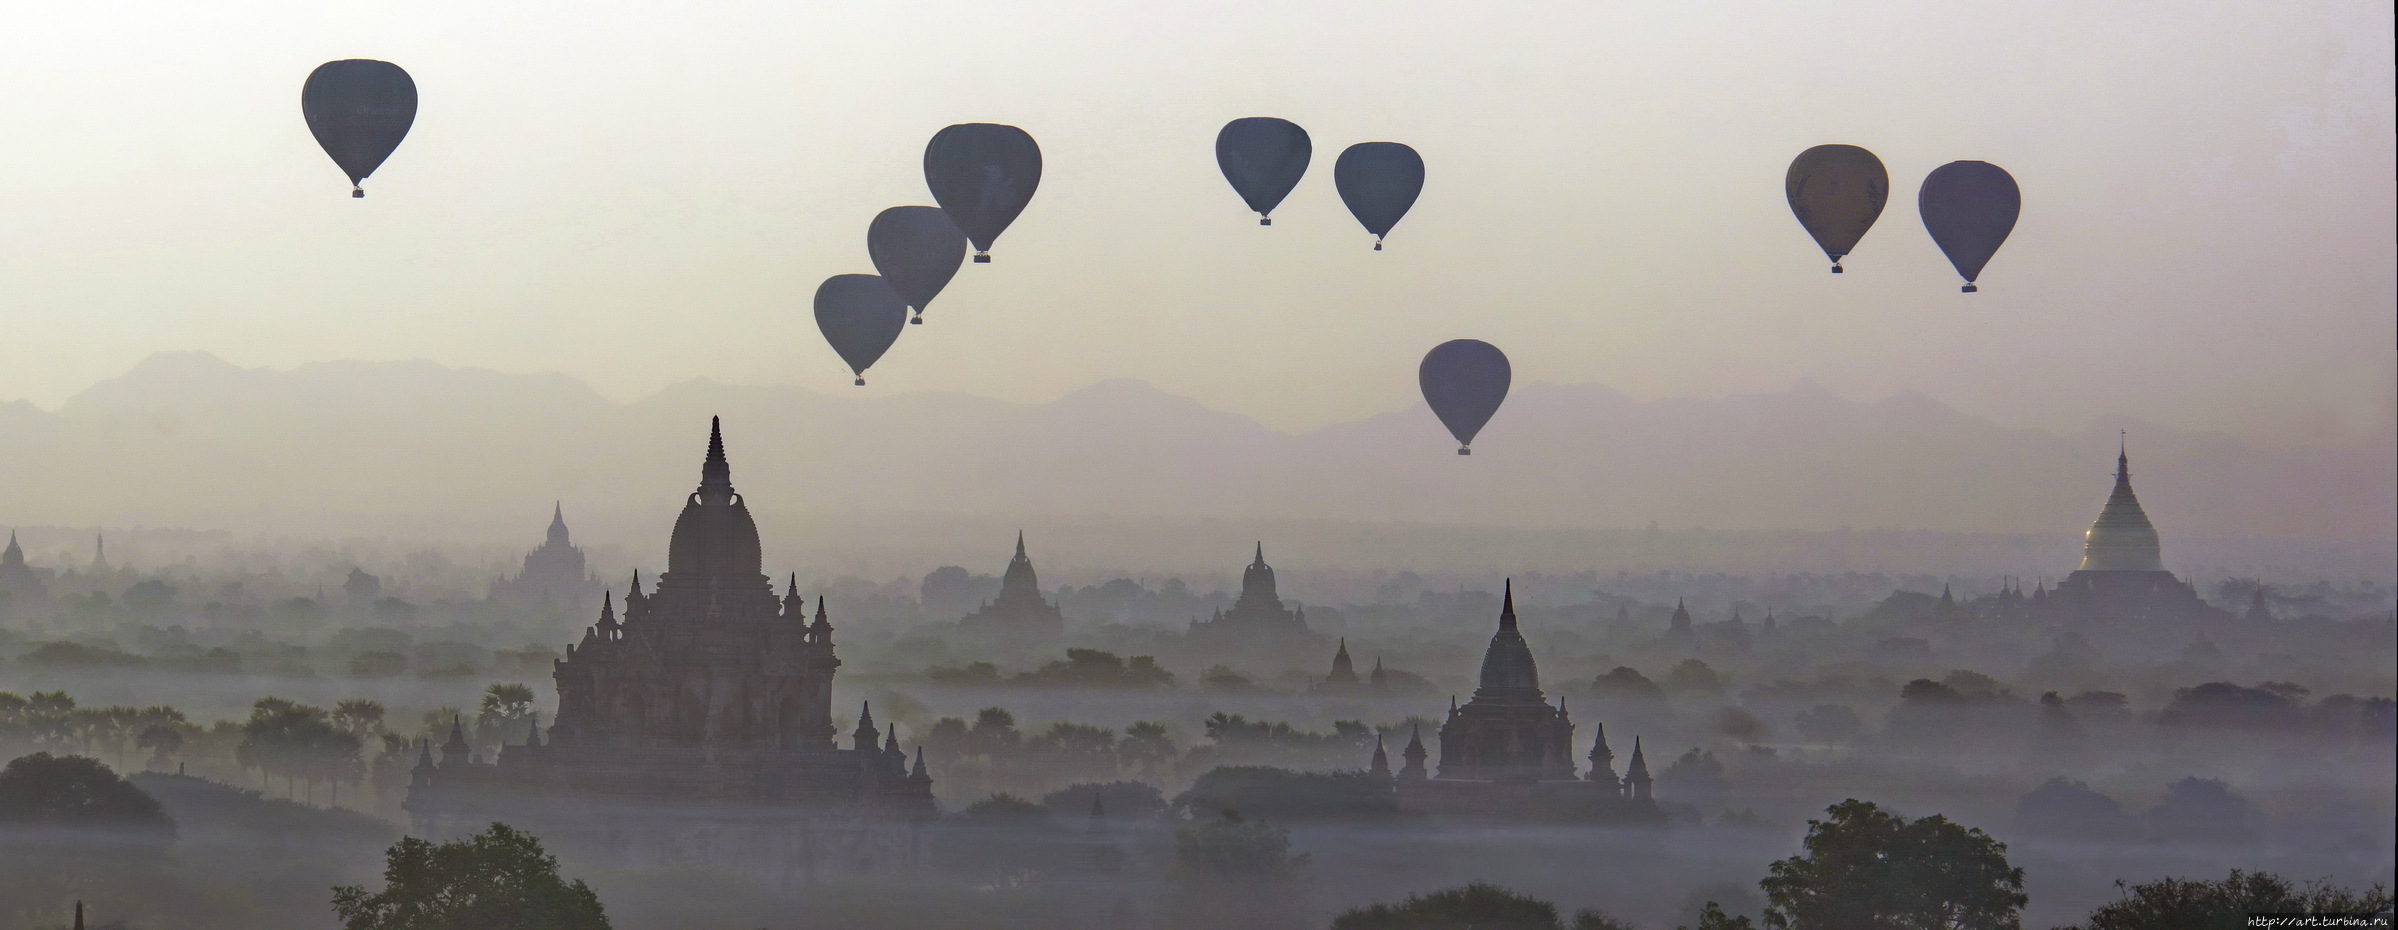 наслаждаясь феерическим зрелищем пролетающих воздушных шаров Баган, Мьянма